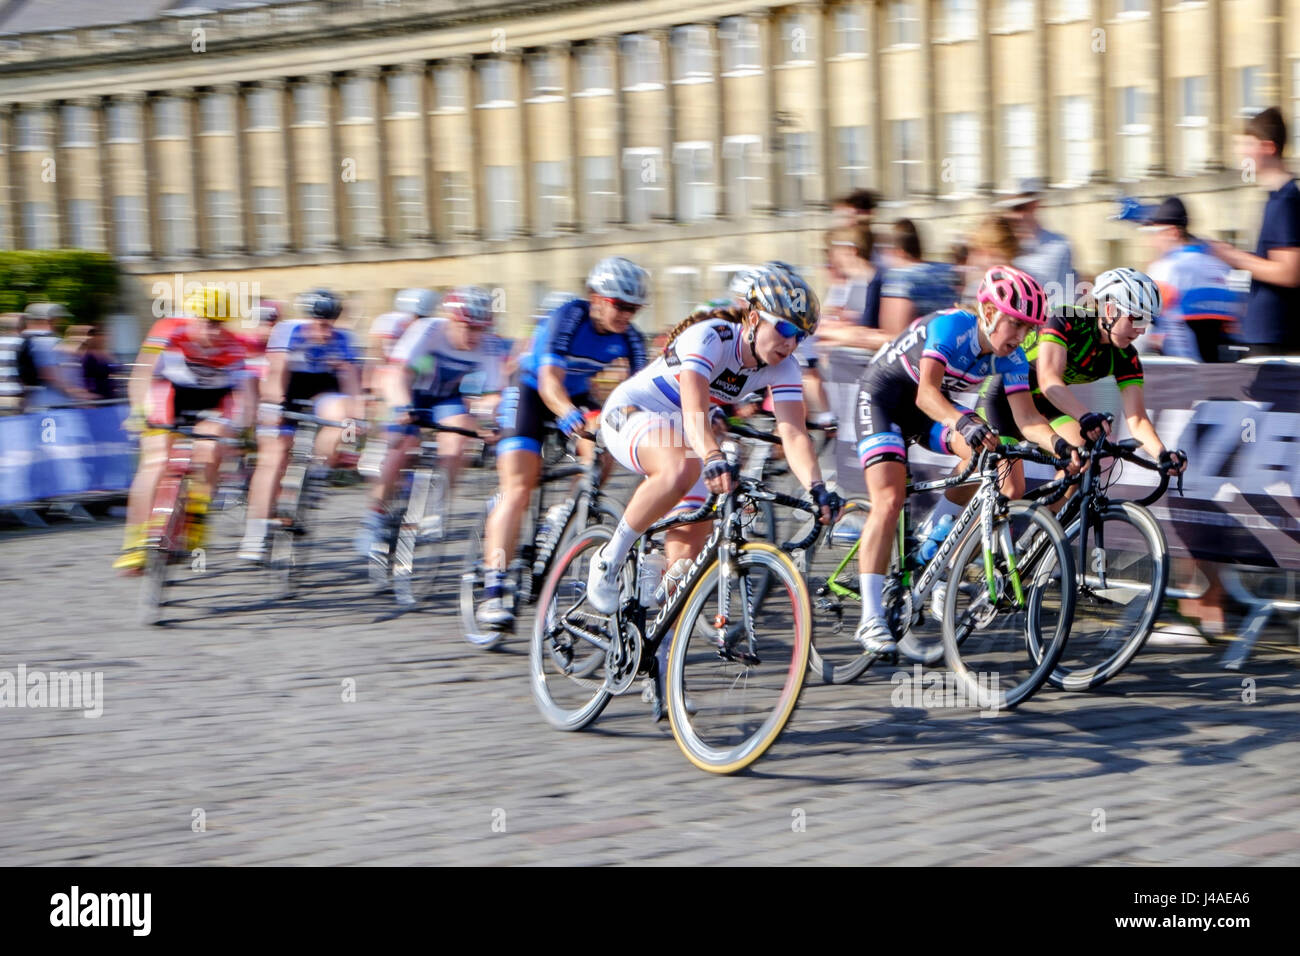 Les concurrents sont illustrés dans la baignoire Royal Crescent à mesure qu'ils prennent part à la ronde finale de la matrice womens série Grand Prix Fitness bicycle race Banque D'Images